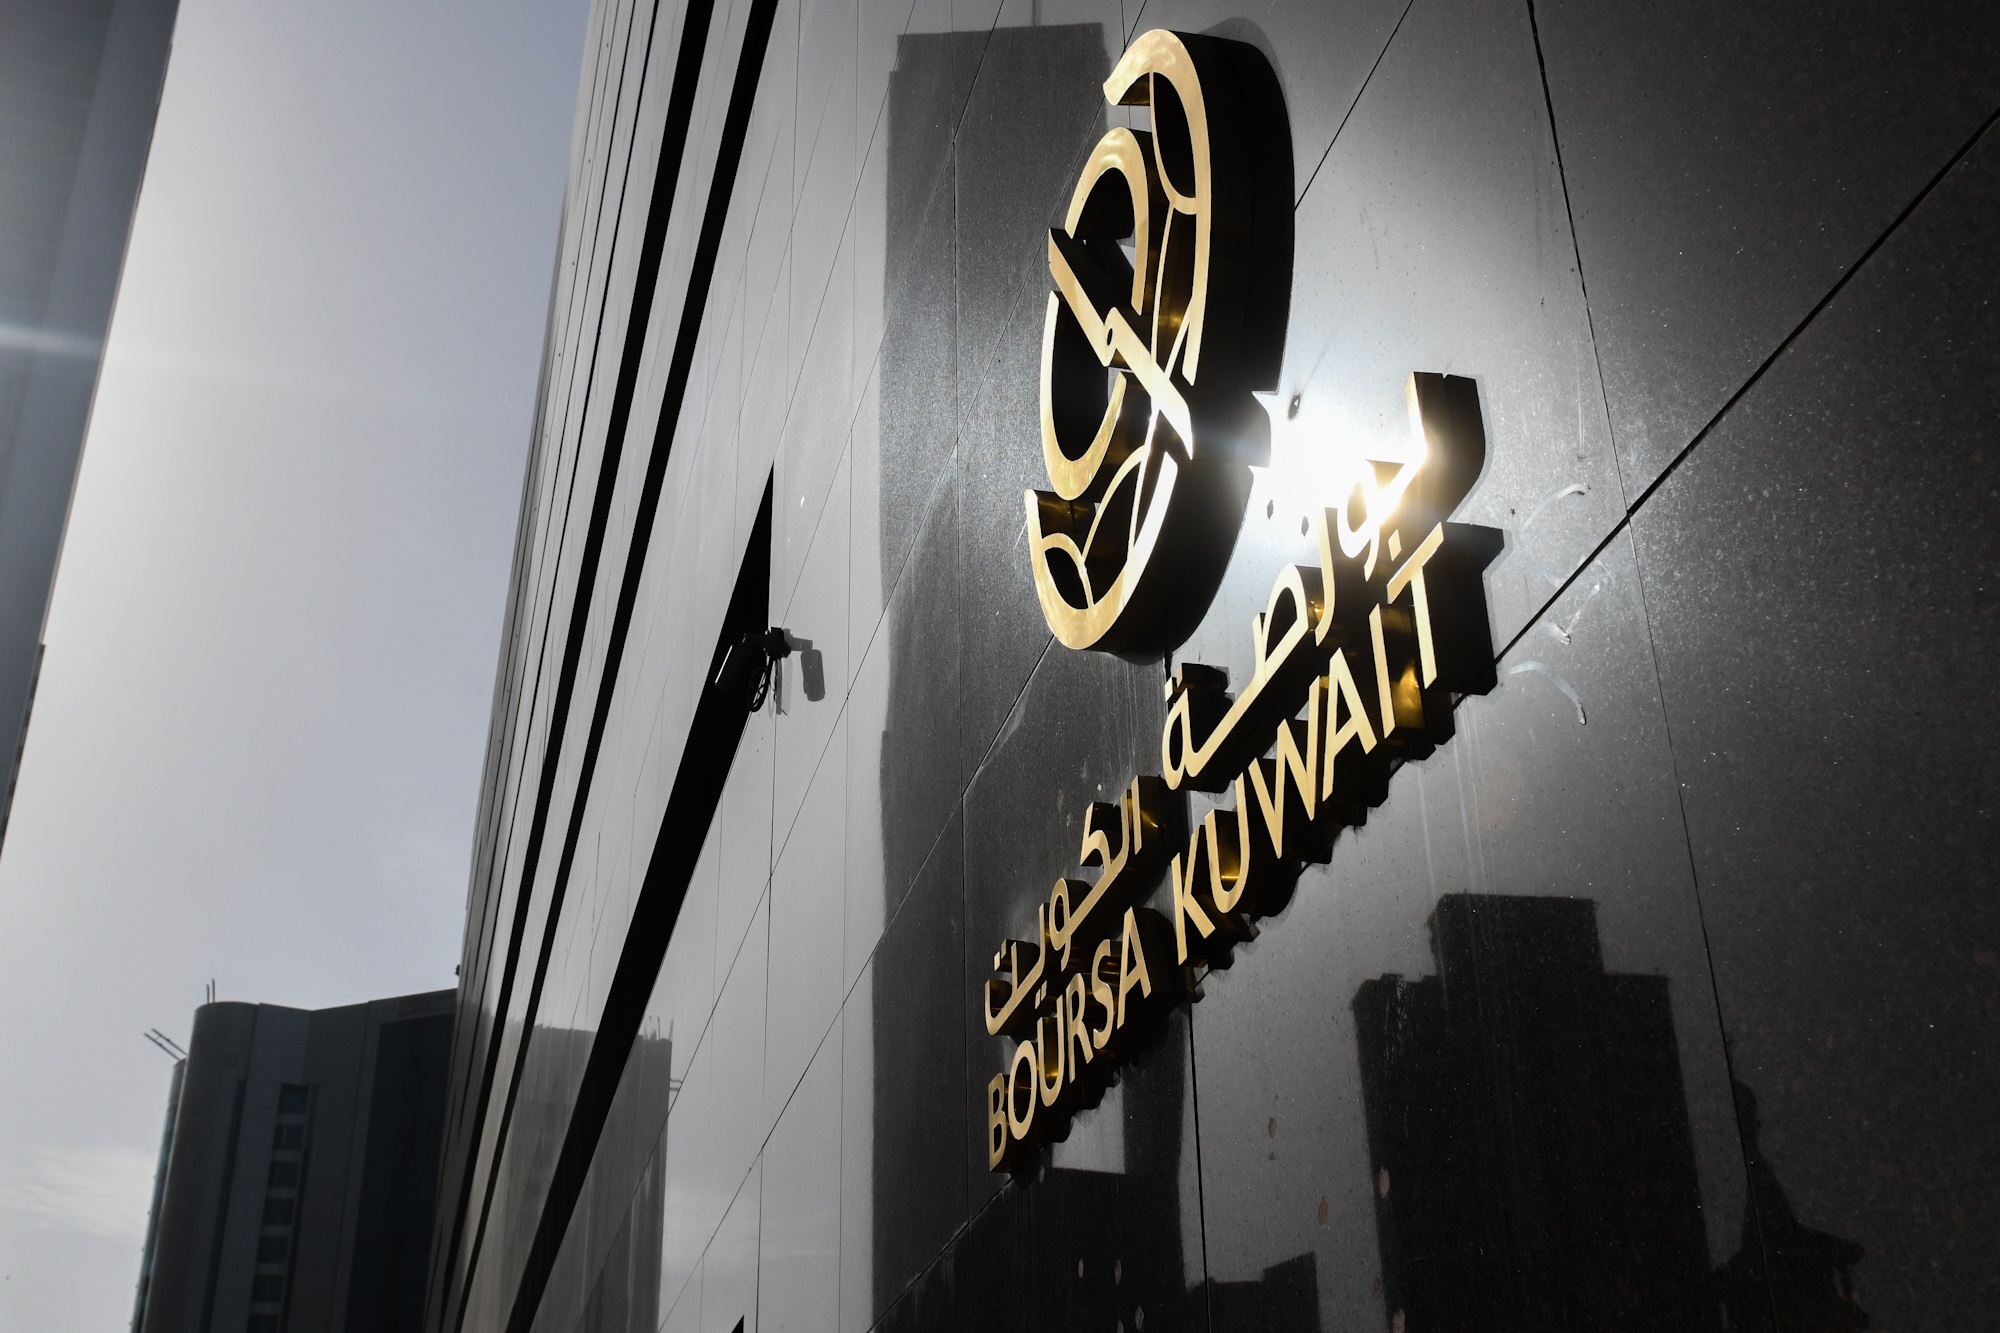 بورصة الكويت تغلق تعاملاتها على ارتفاع مؤشرها العام 9ر11 نقطة ليبلغ 34ر7256 بنسبة 16ر0 في المئة                                                                                                                                                           